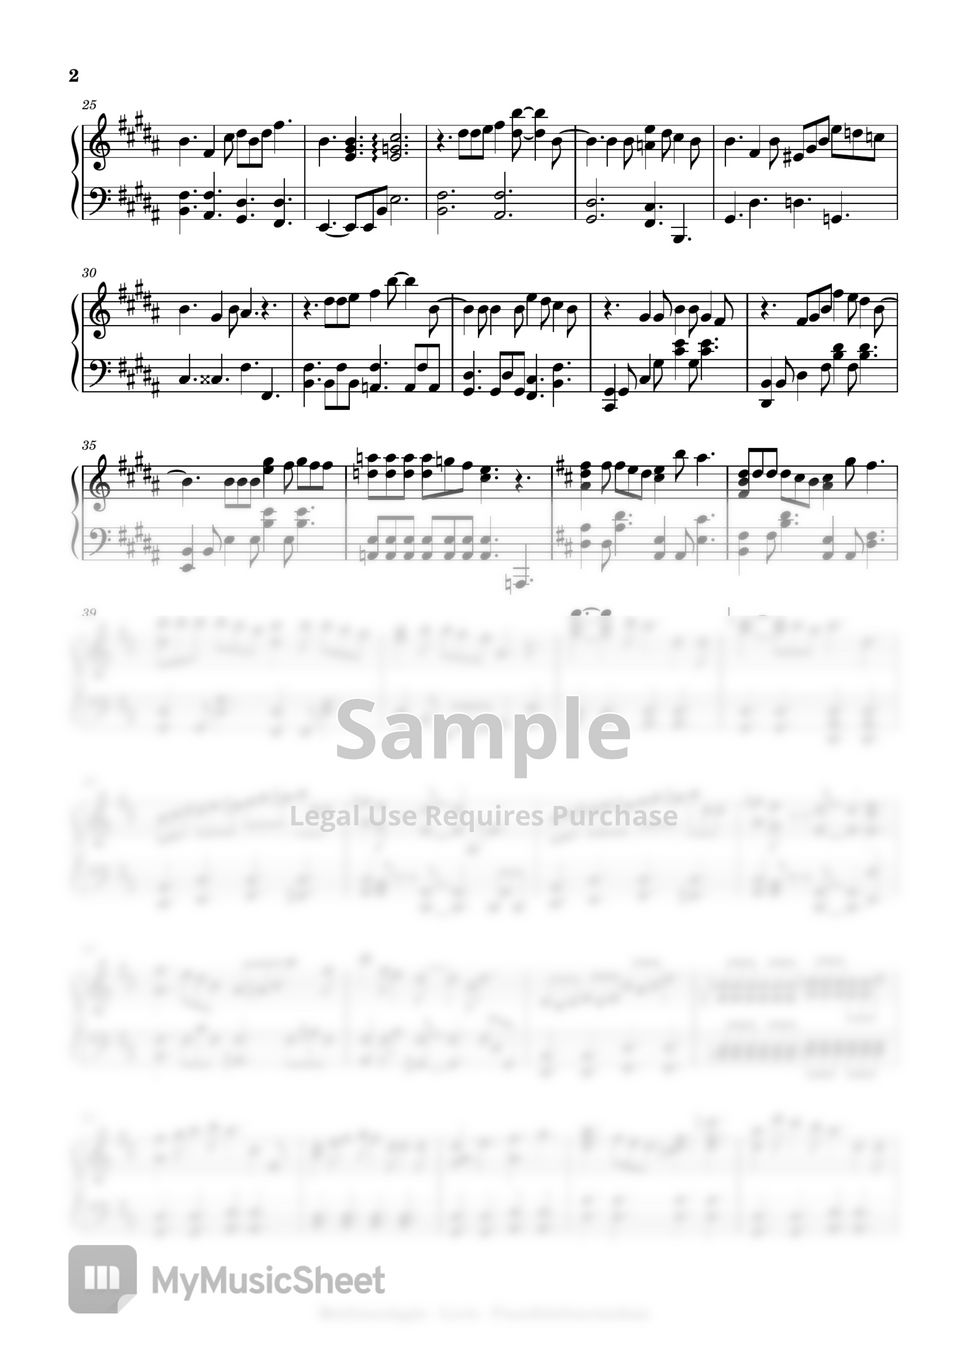 Mrs. GREEN APPLE - lovin' (intermediate, piano) by Mopianic